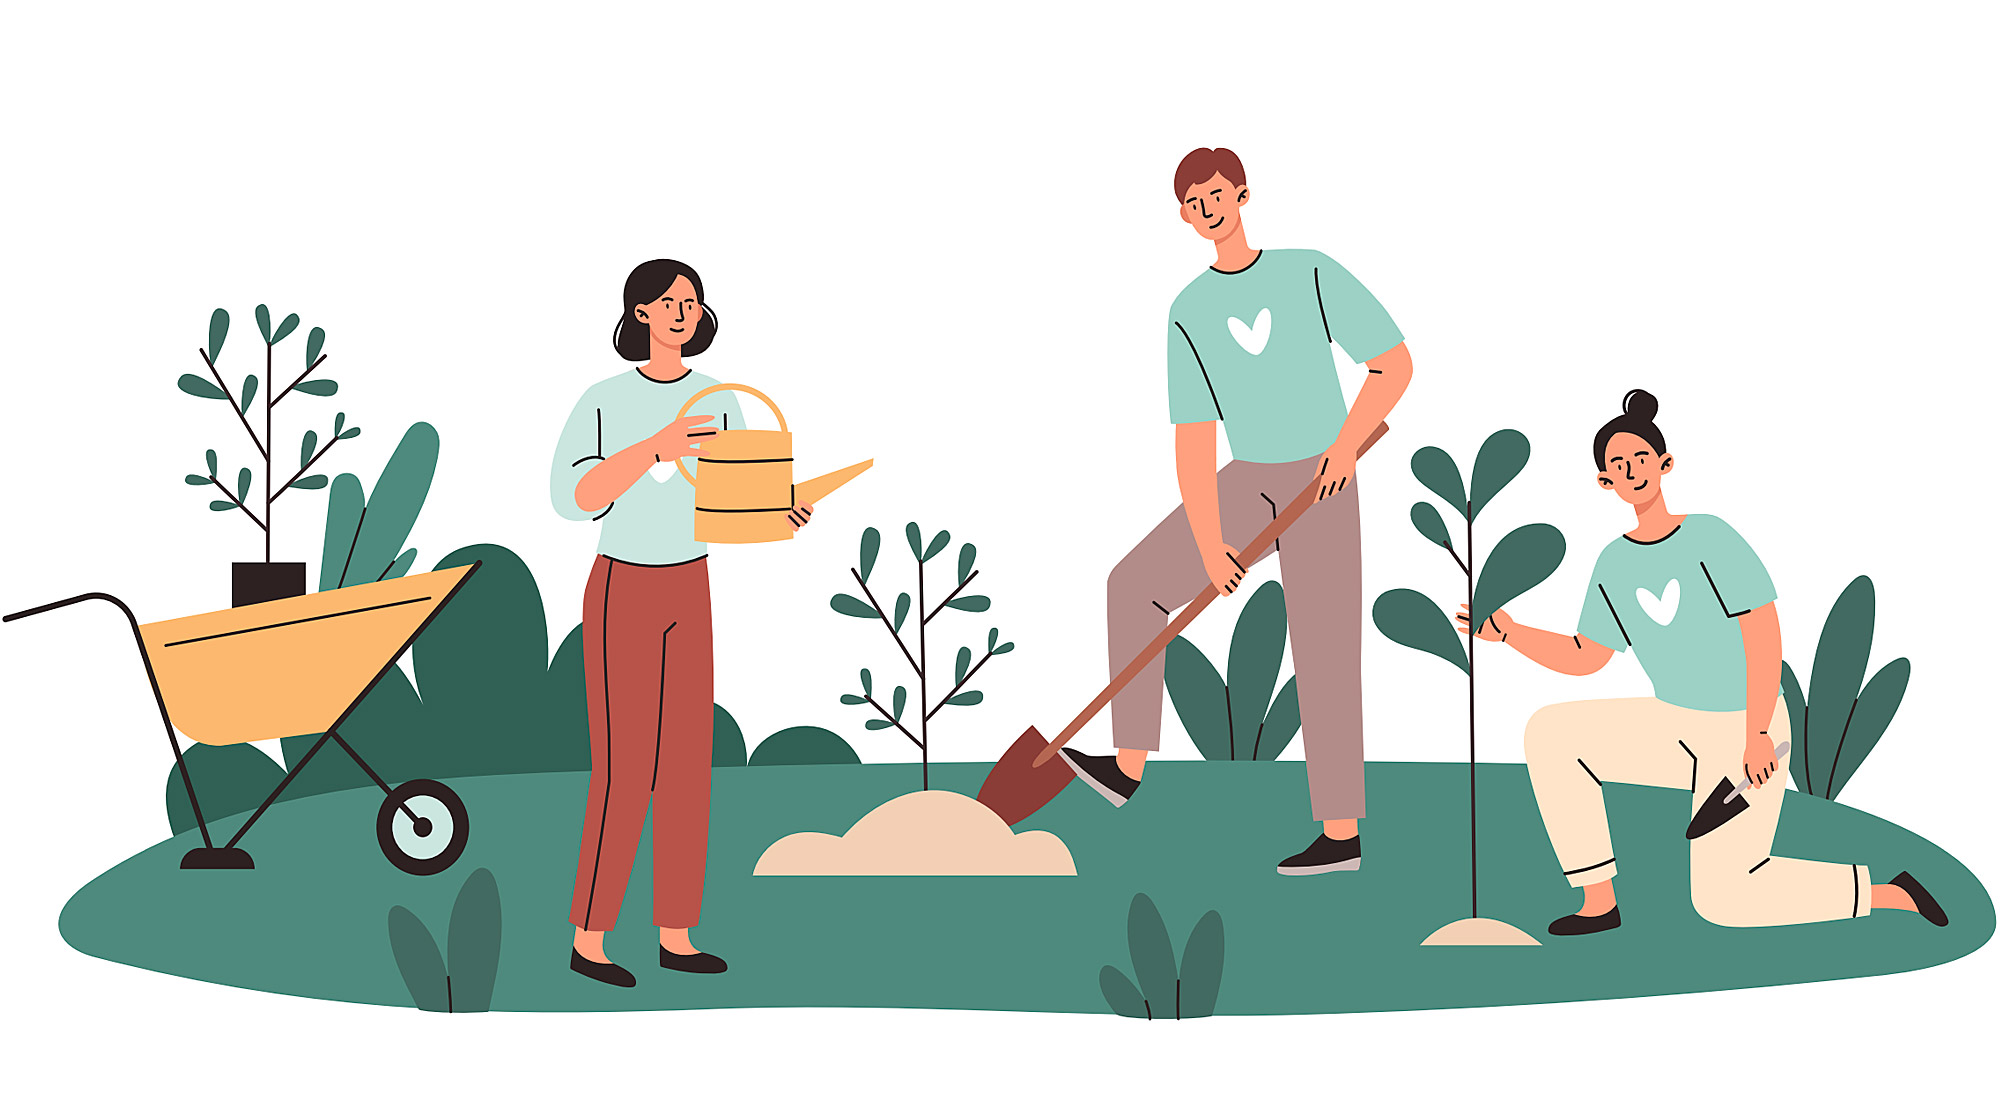 Piirretty kuva, jossa kolme ihmistä tekee puutarhatöitä.